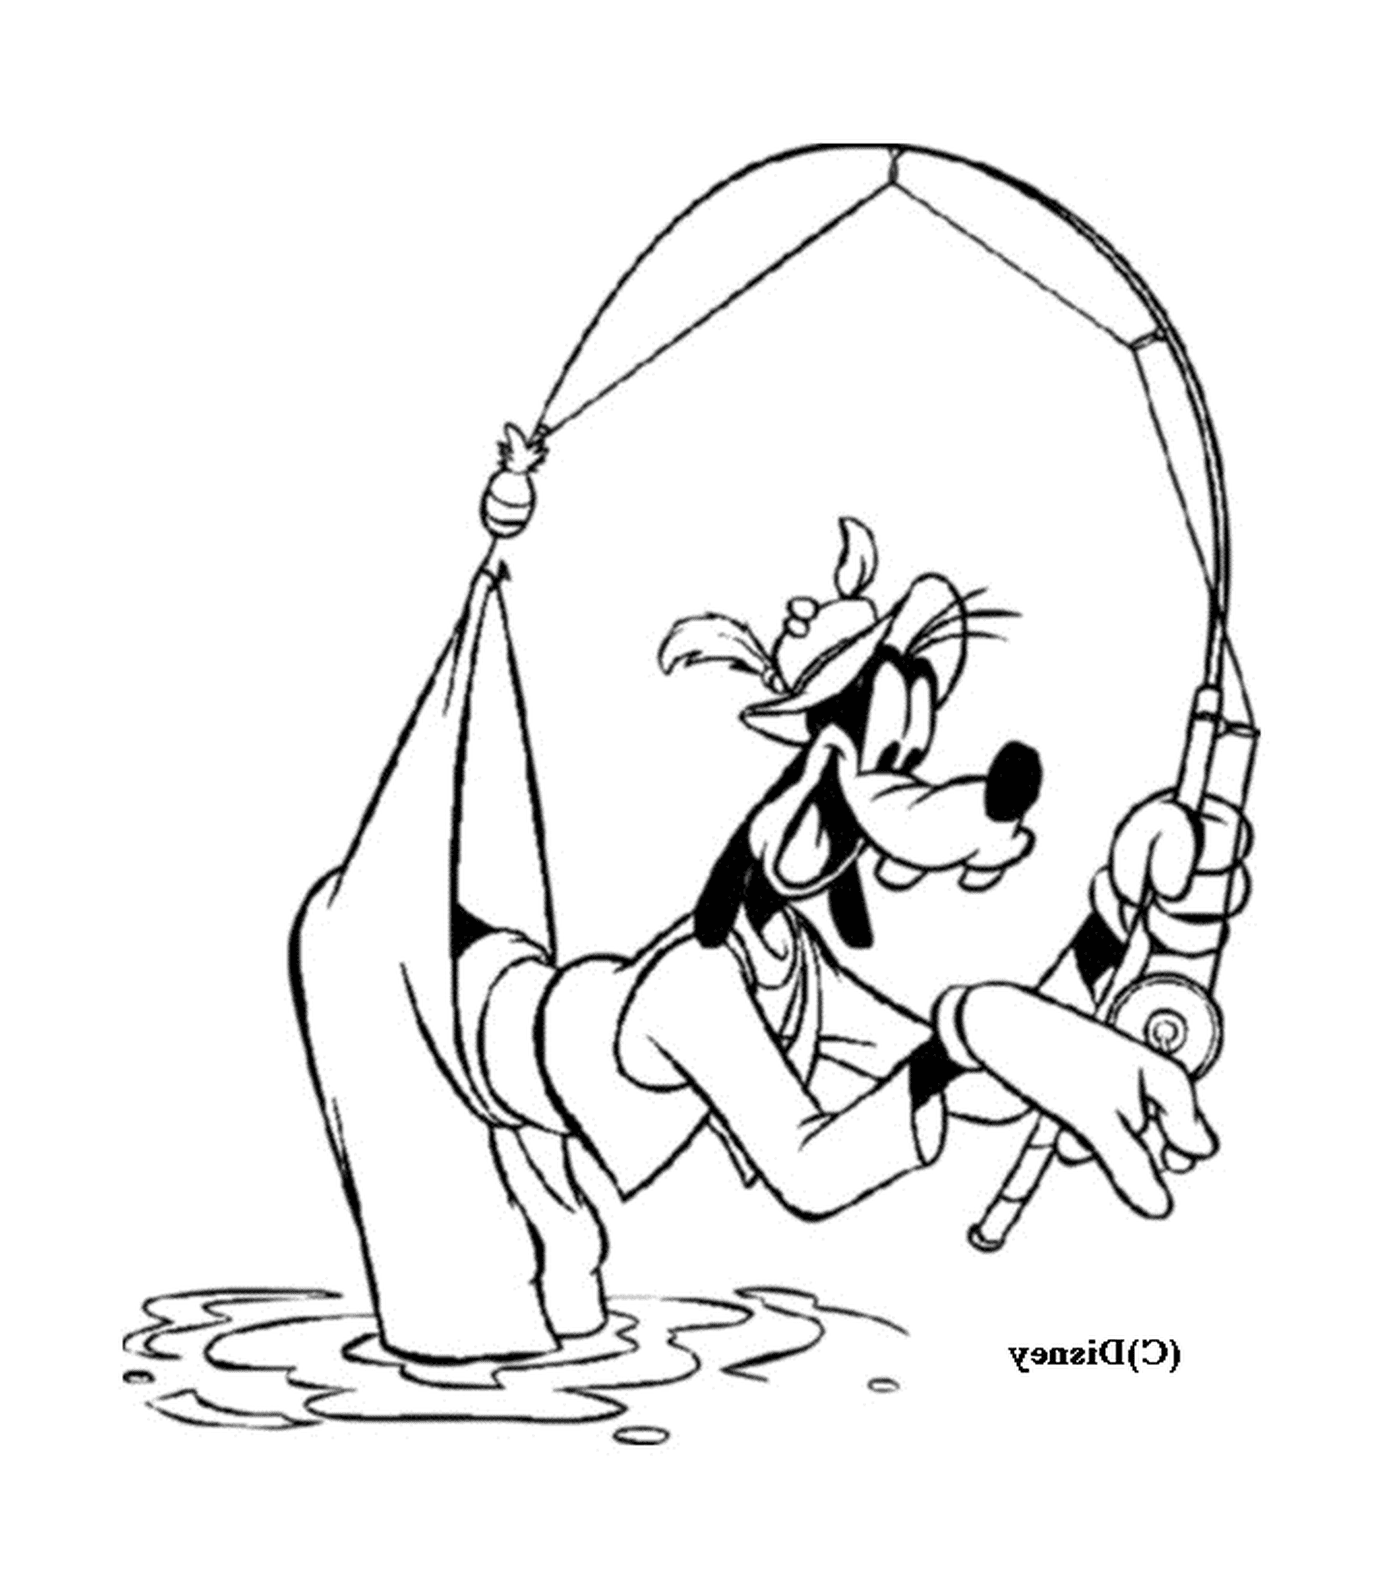  Pesca Dingo com uma vara de pesca 